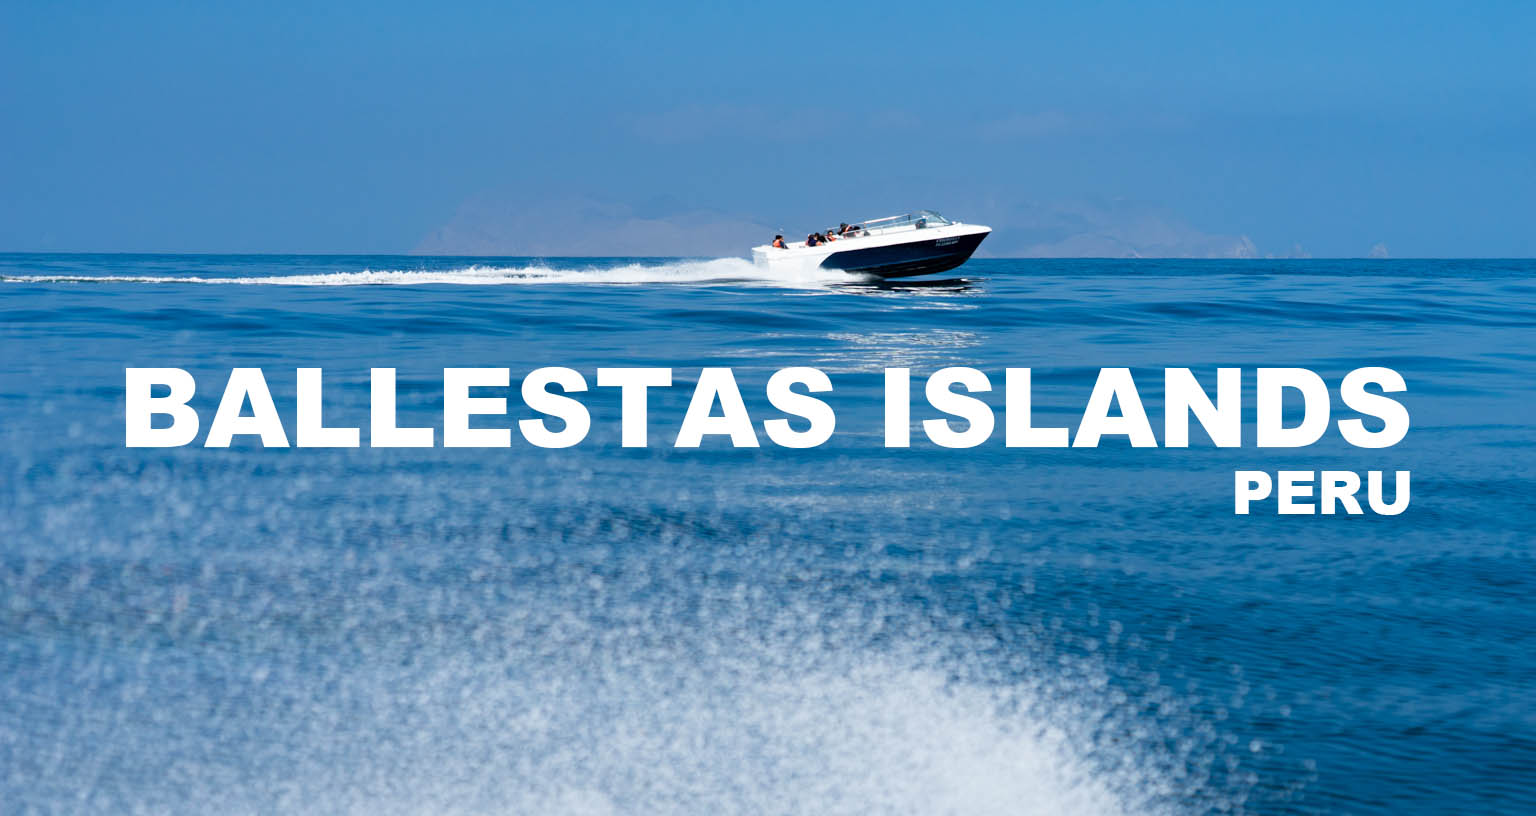 The Ballestas Islands